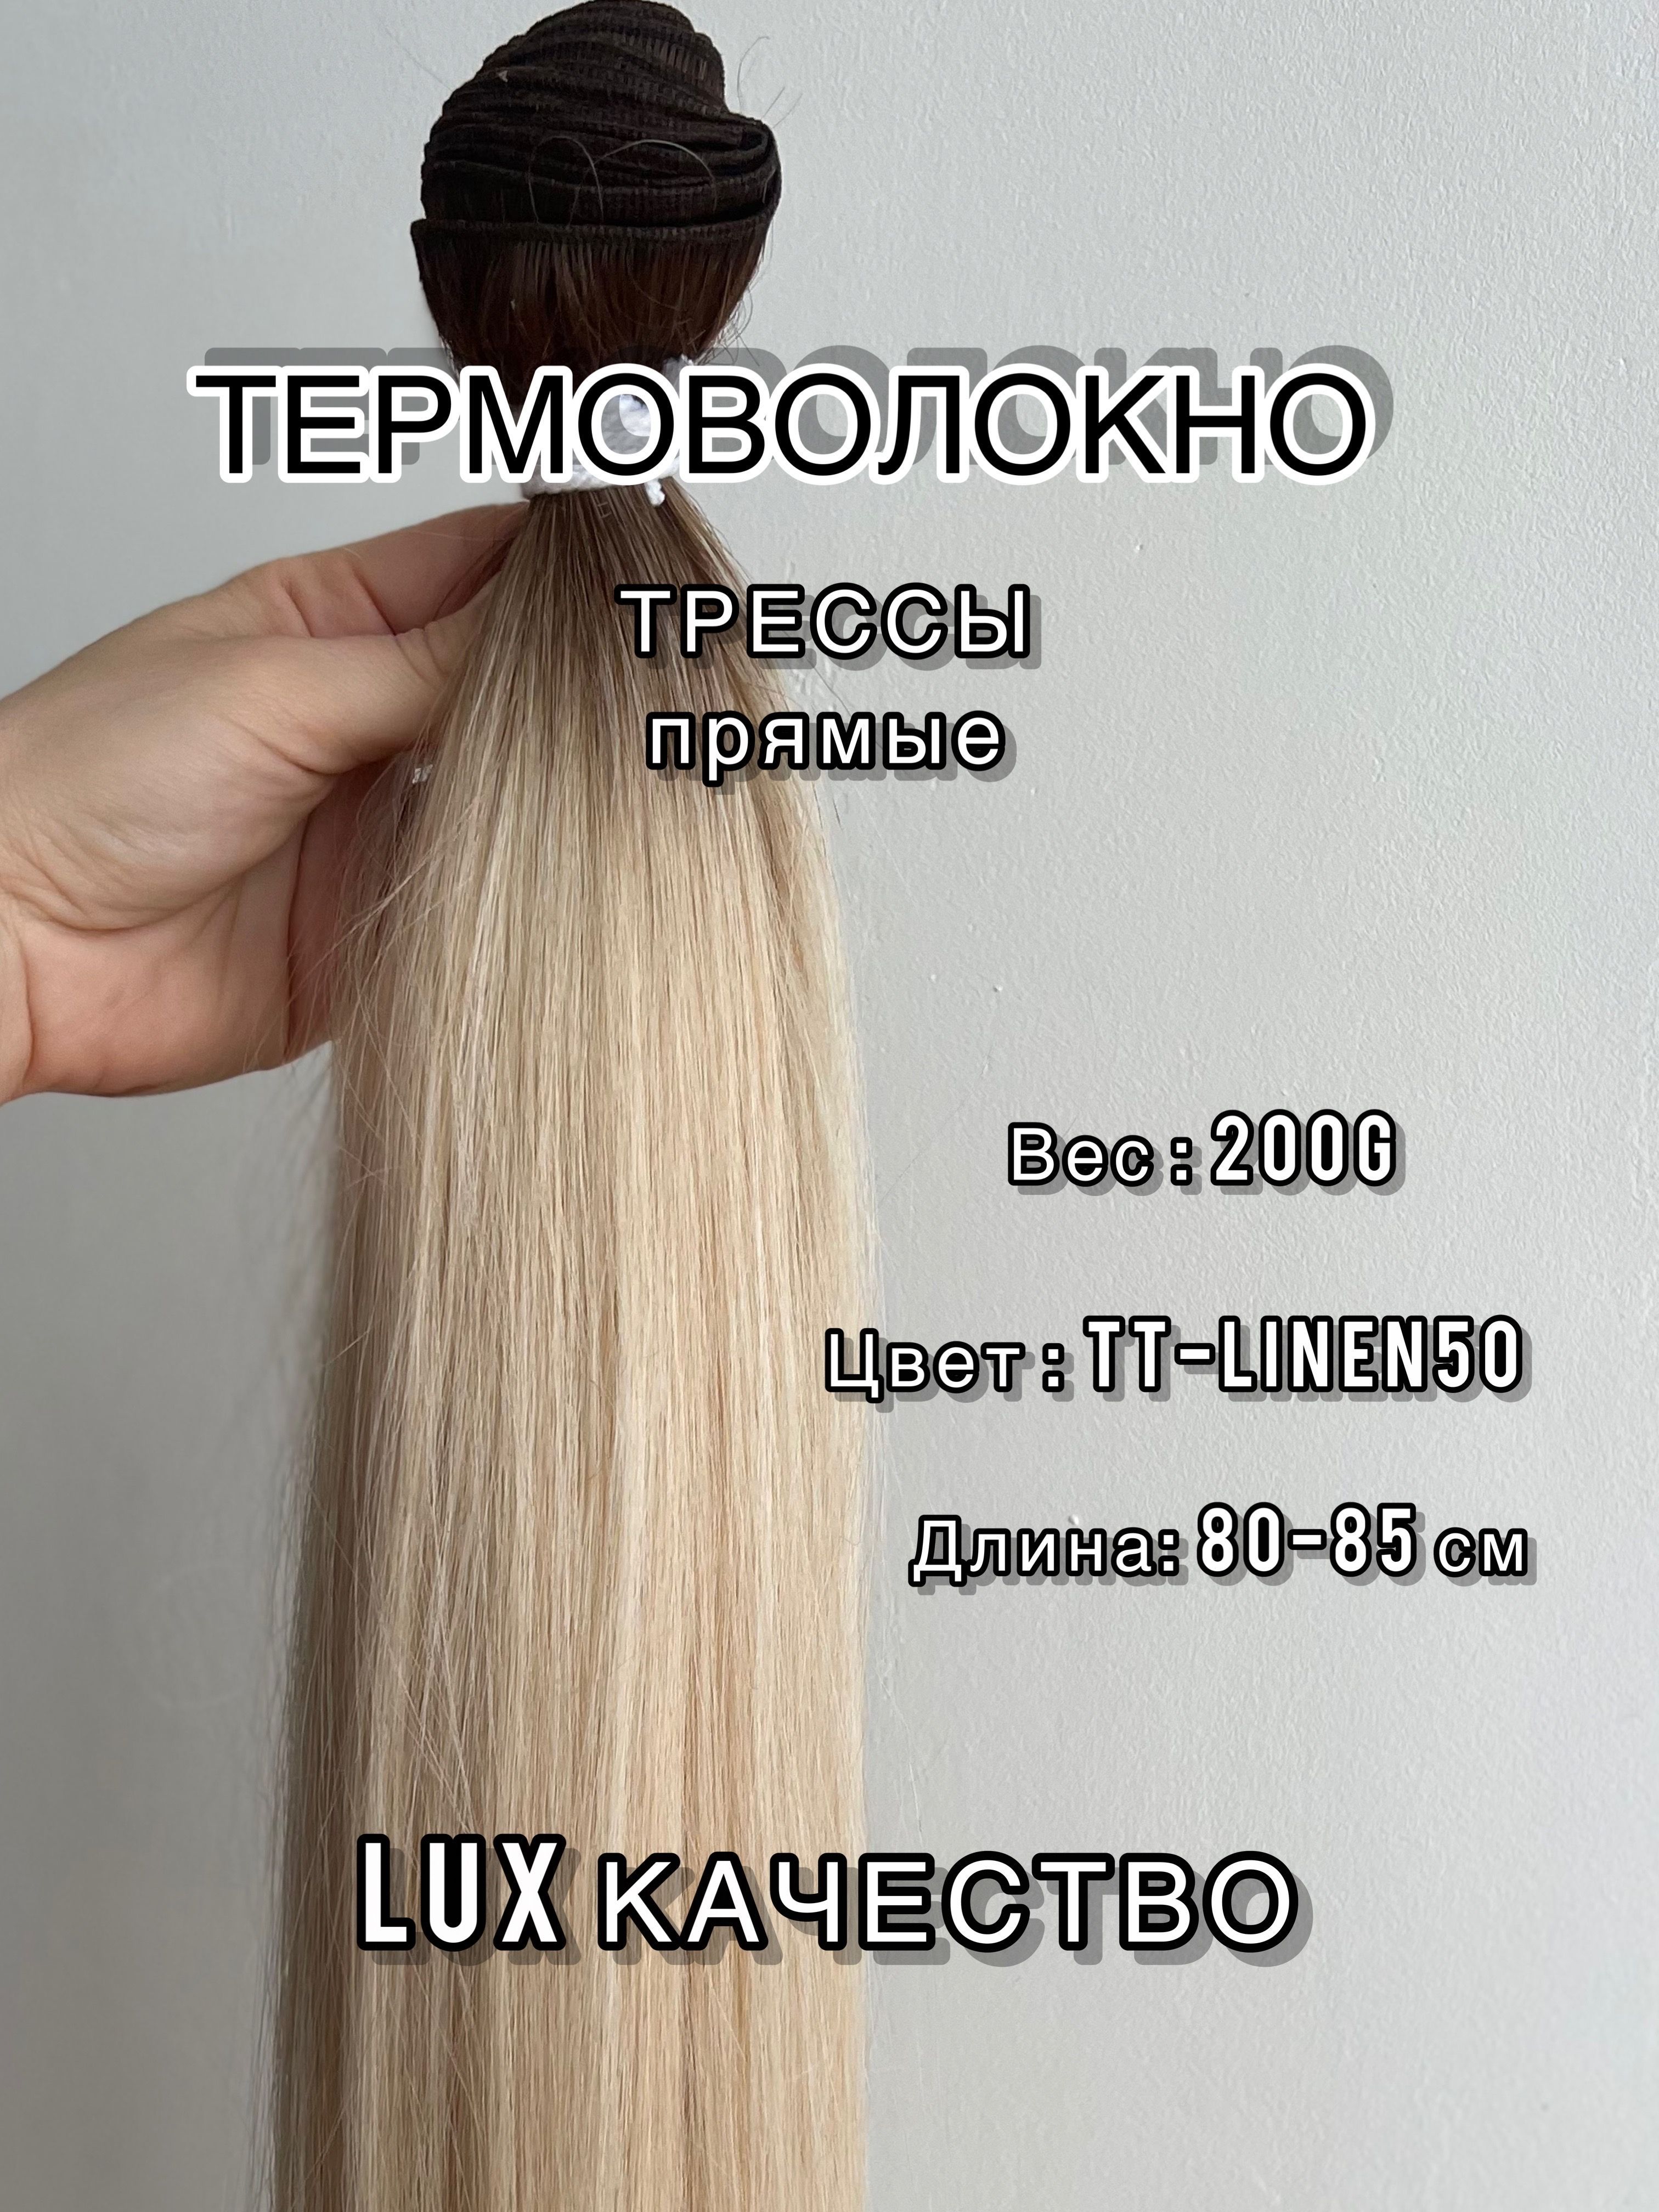 Биопротеиновое наращивание отзывы. Биопротеиновый волос для наращивания. Биопротеиновое наращивание волос. Биопротеиновый волос для наращивания отзывы. Биопротеиновый волос для наращивания фото.